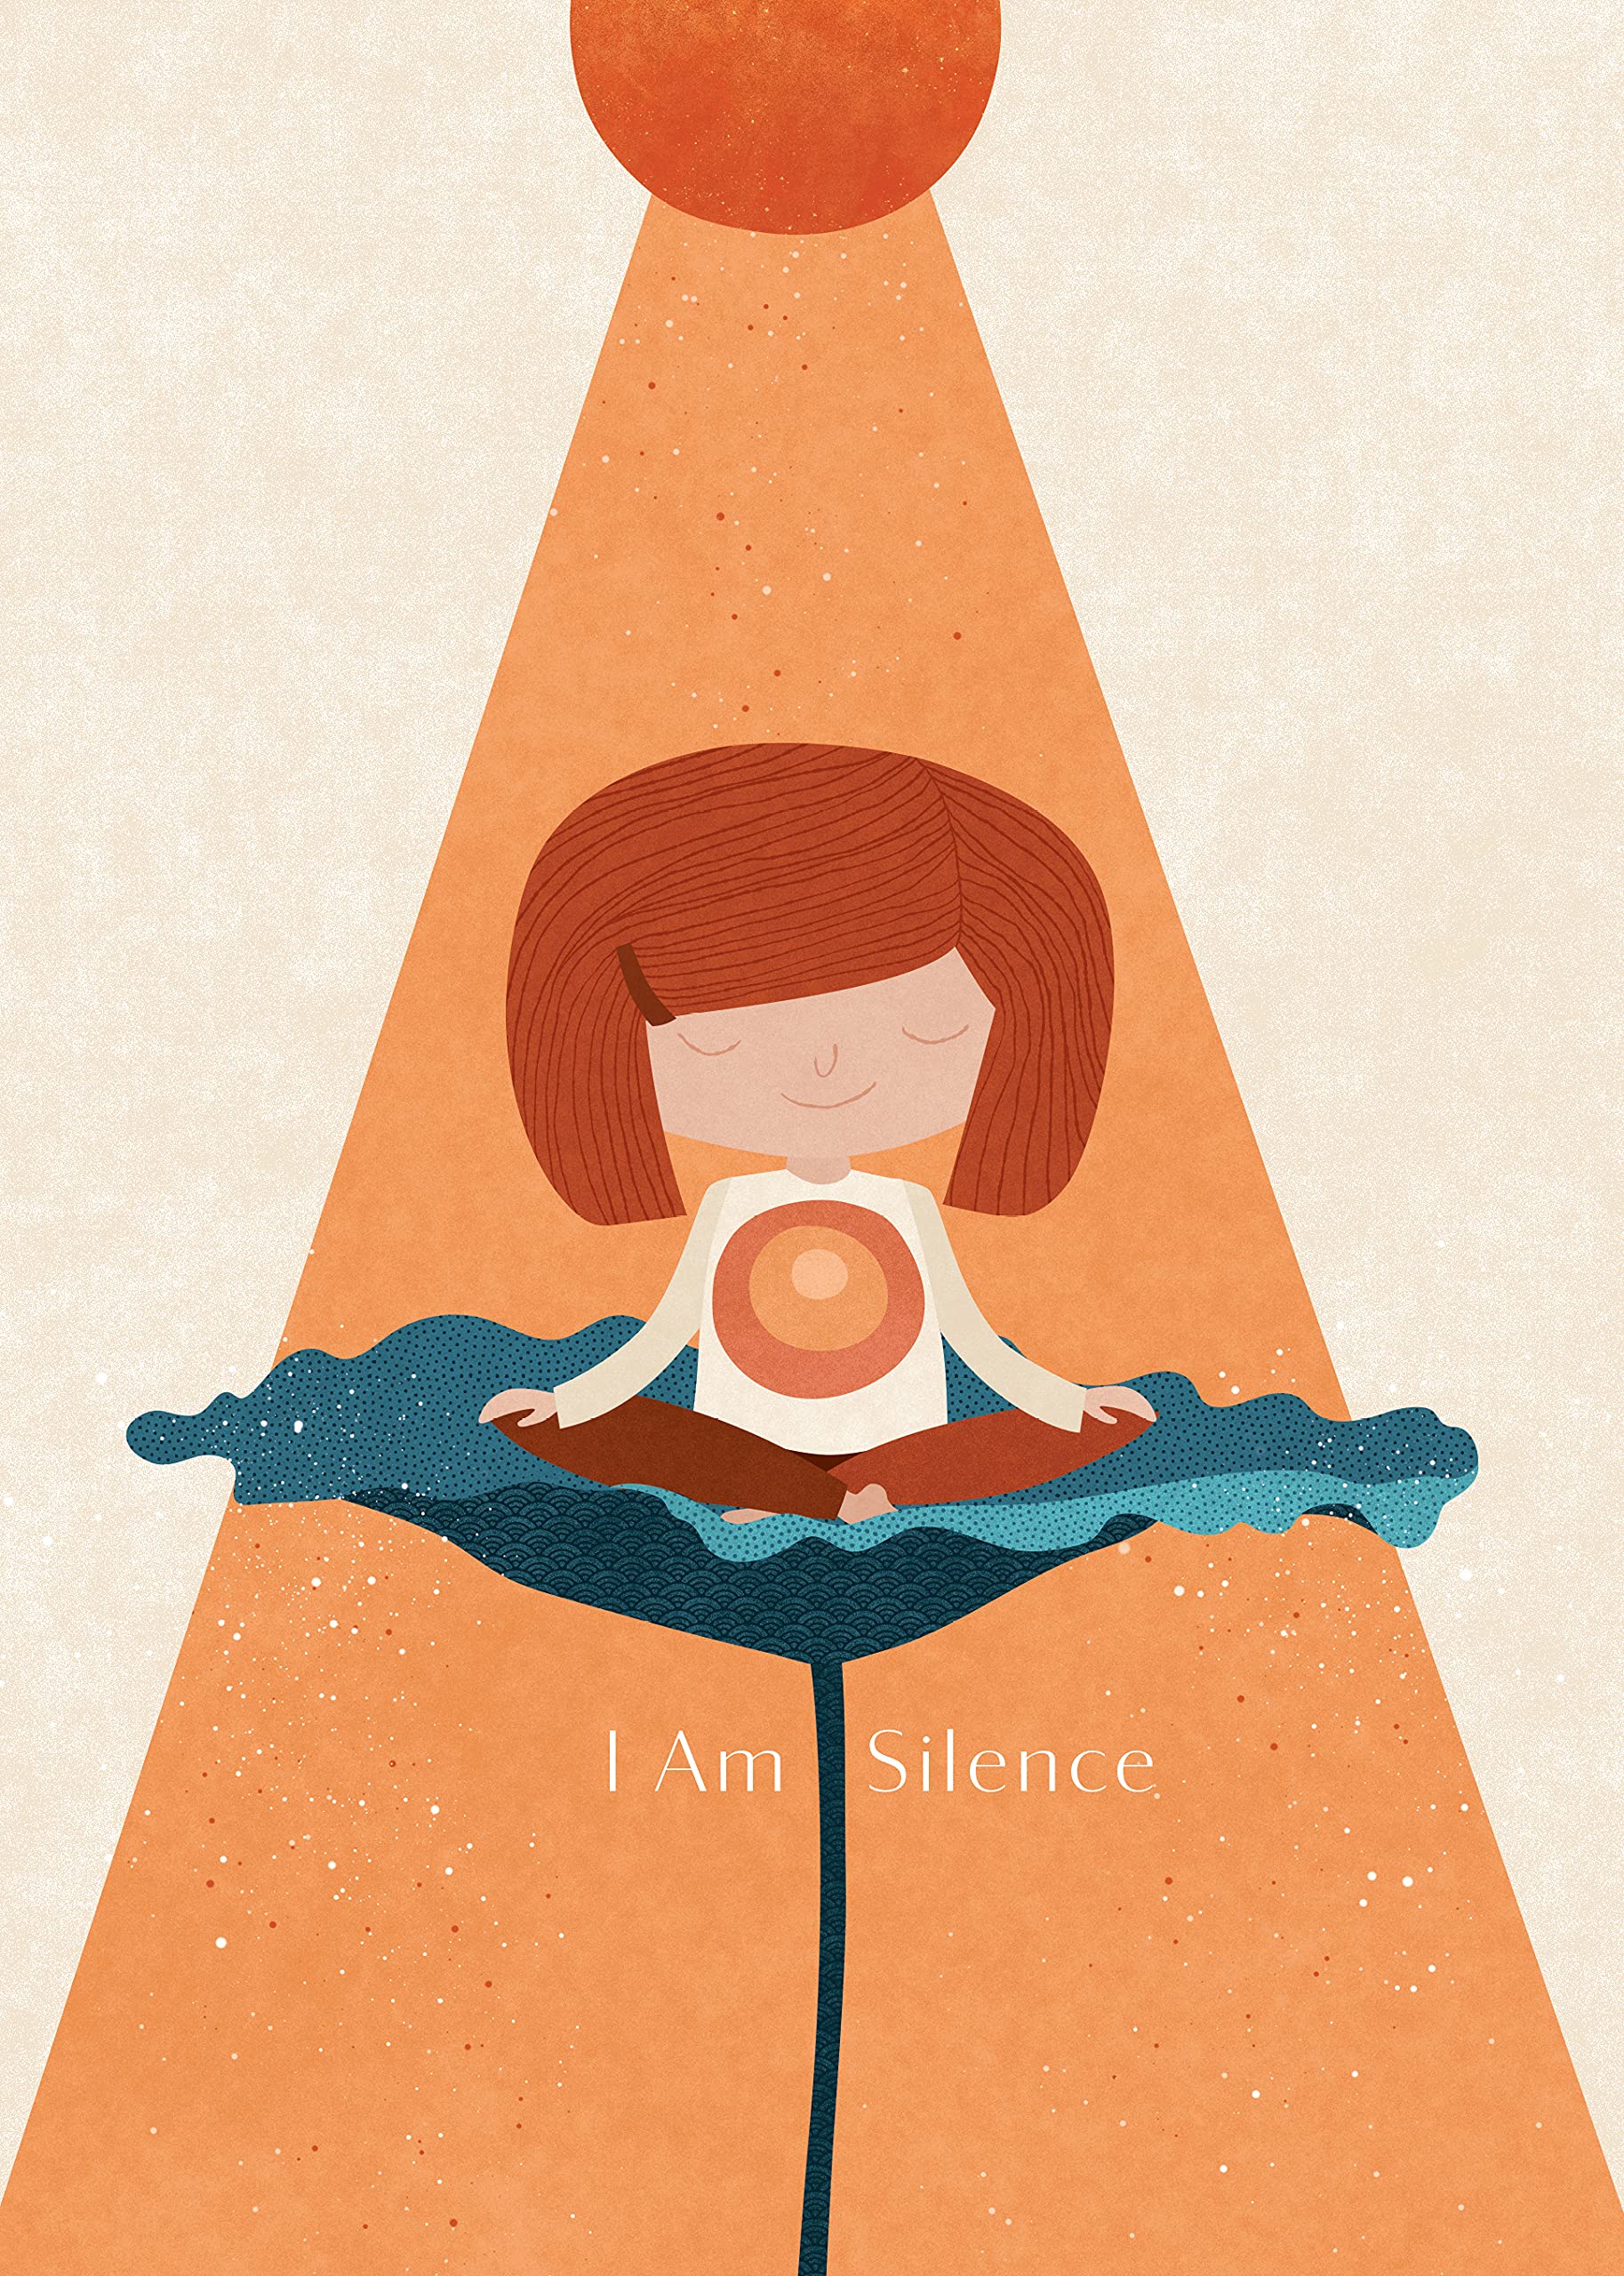 I Am Silence - SureShot Books Publishing LLC